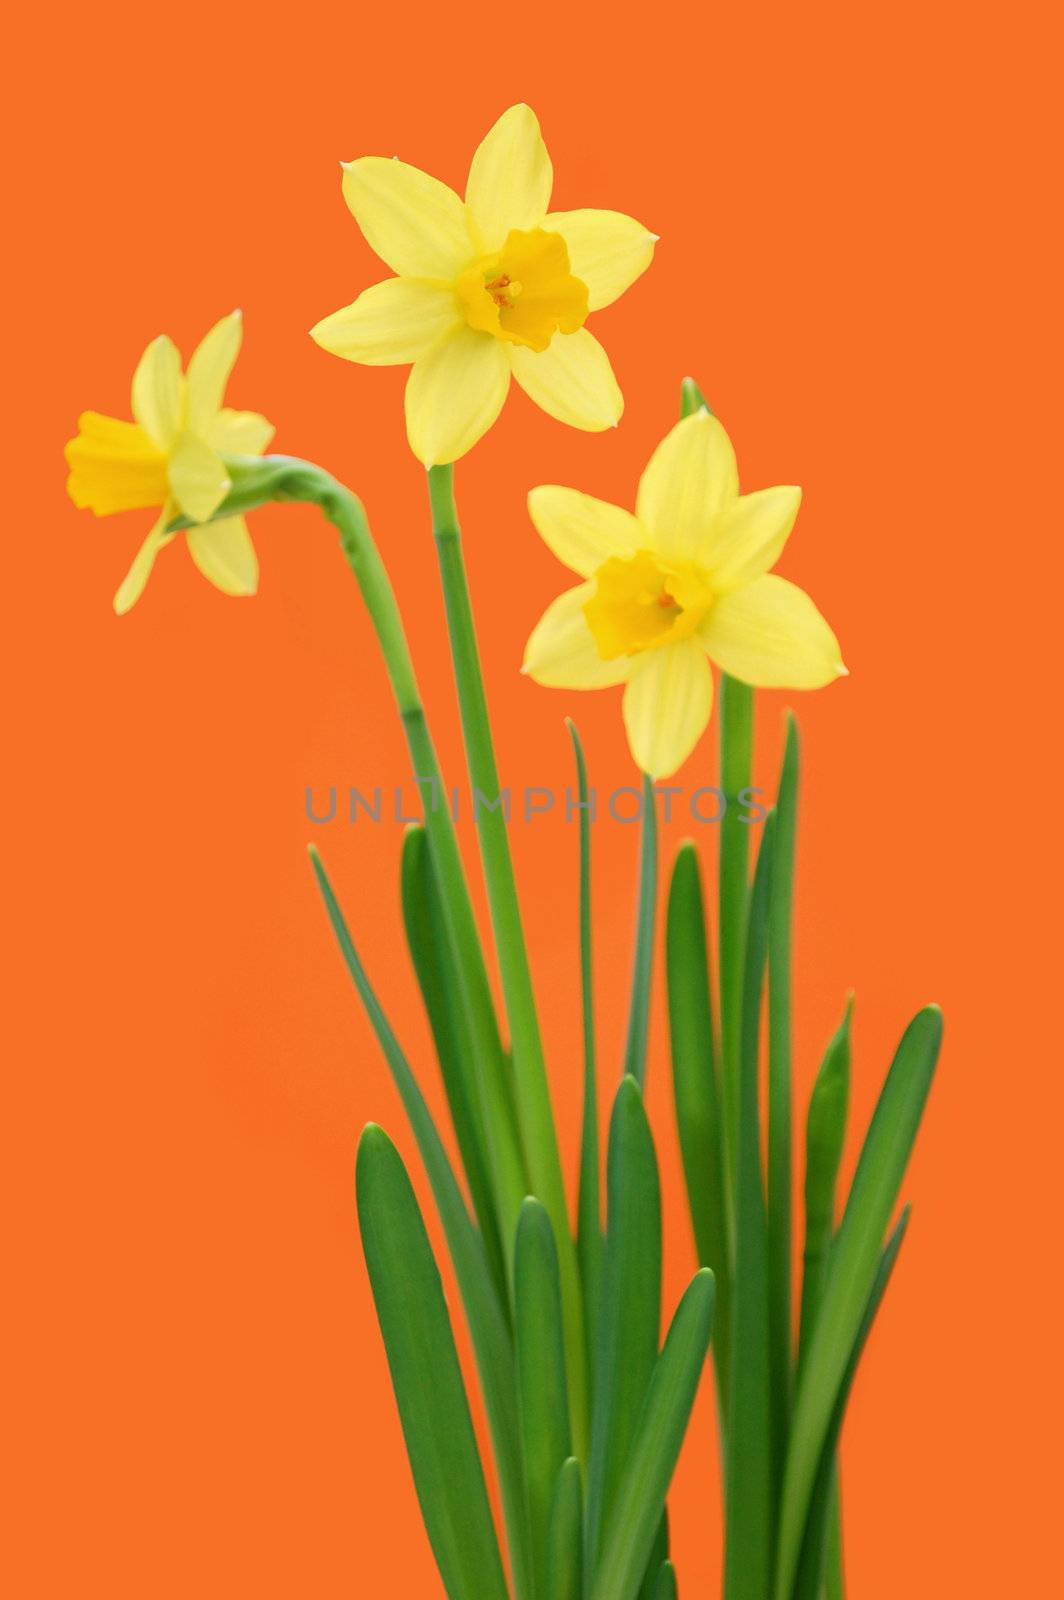 Daffodils  by unikpix